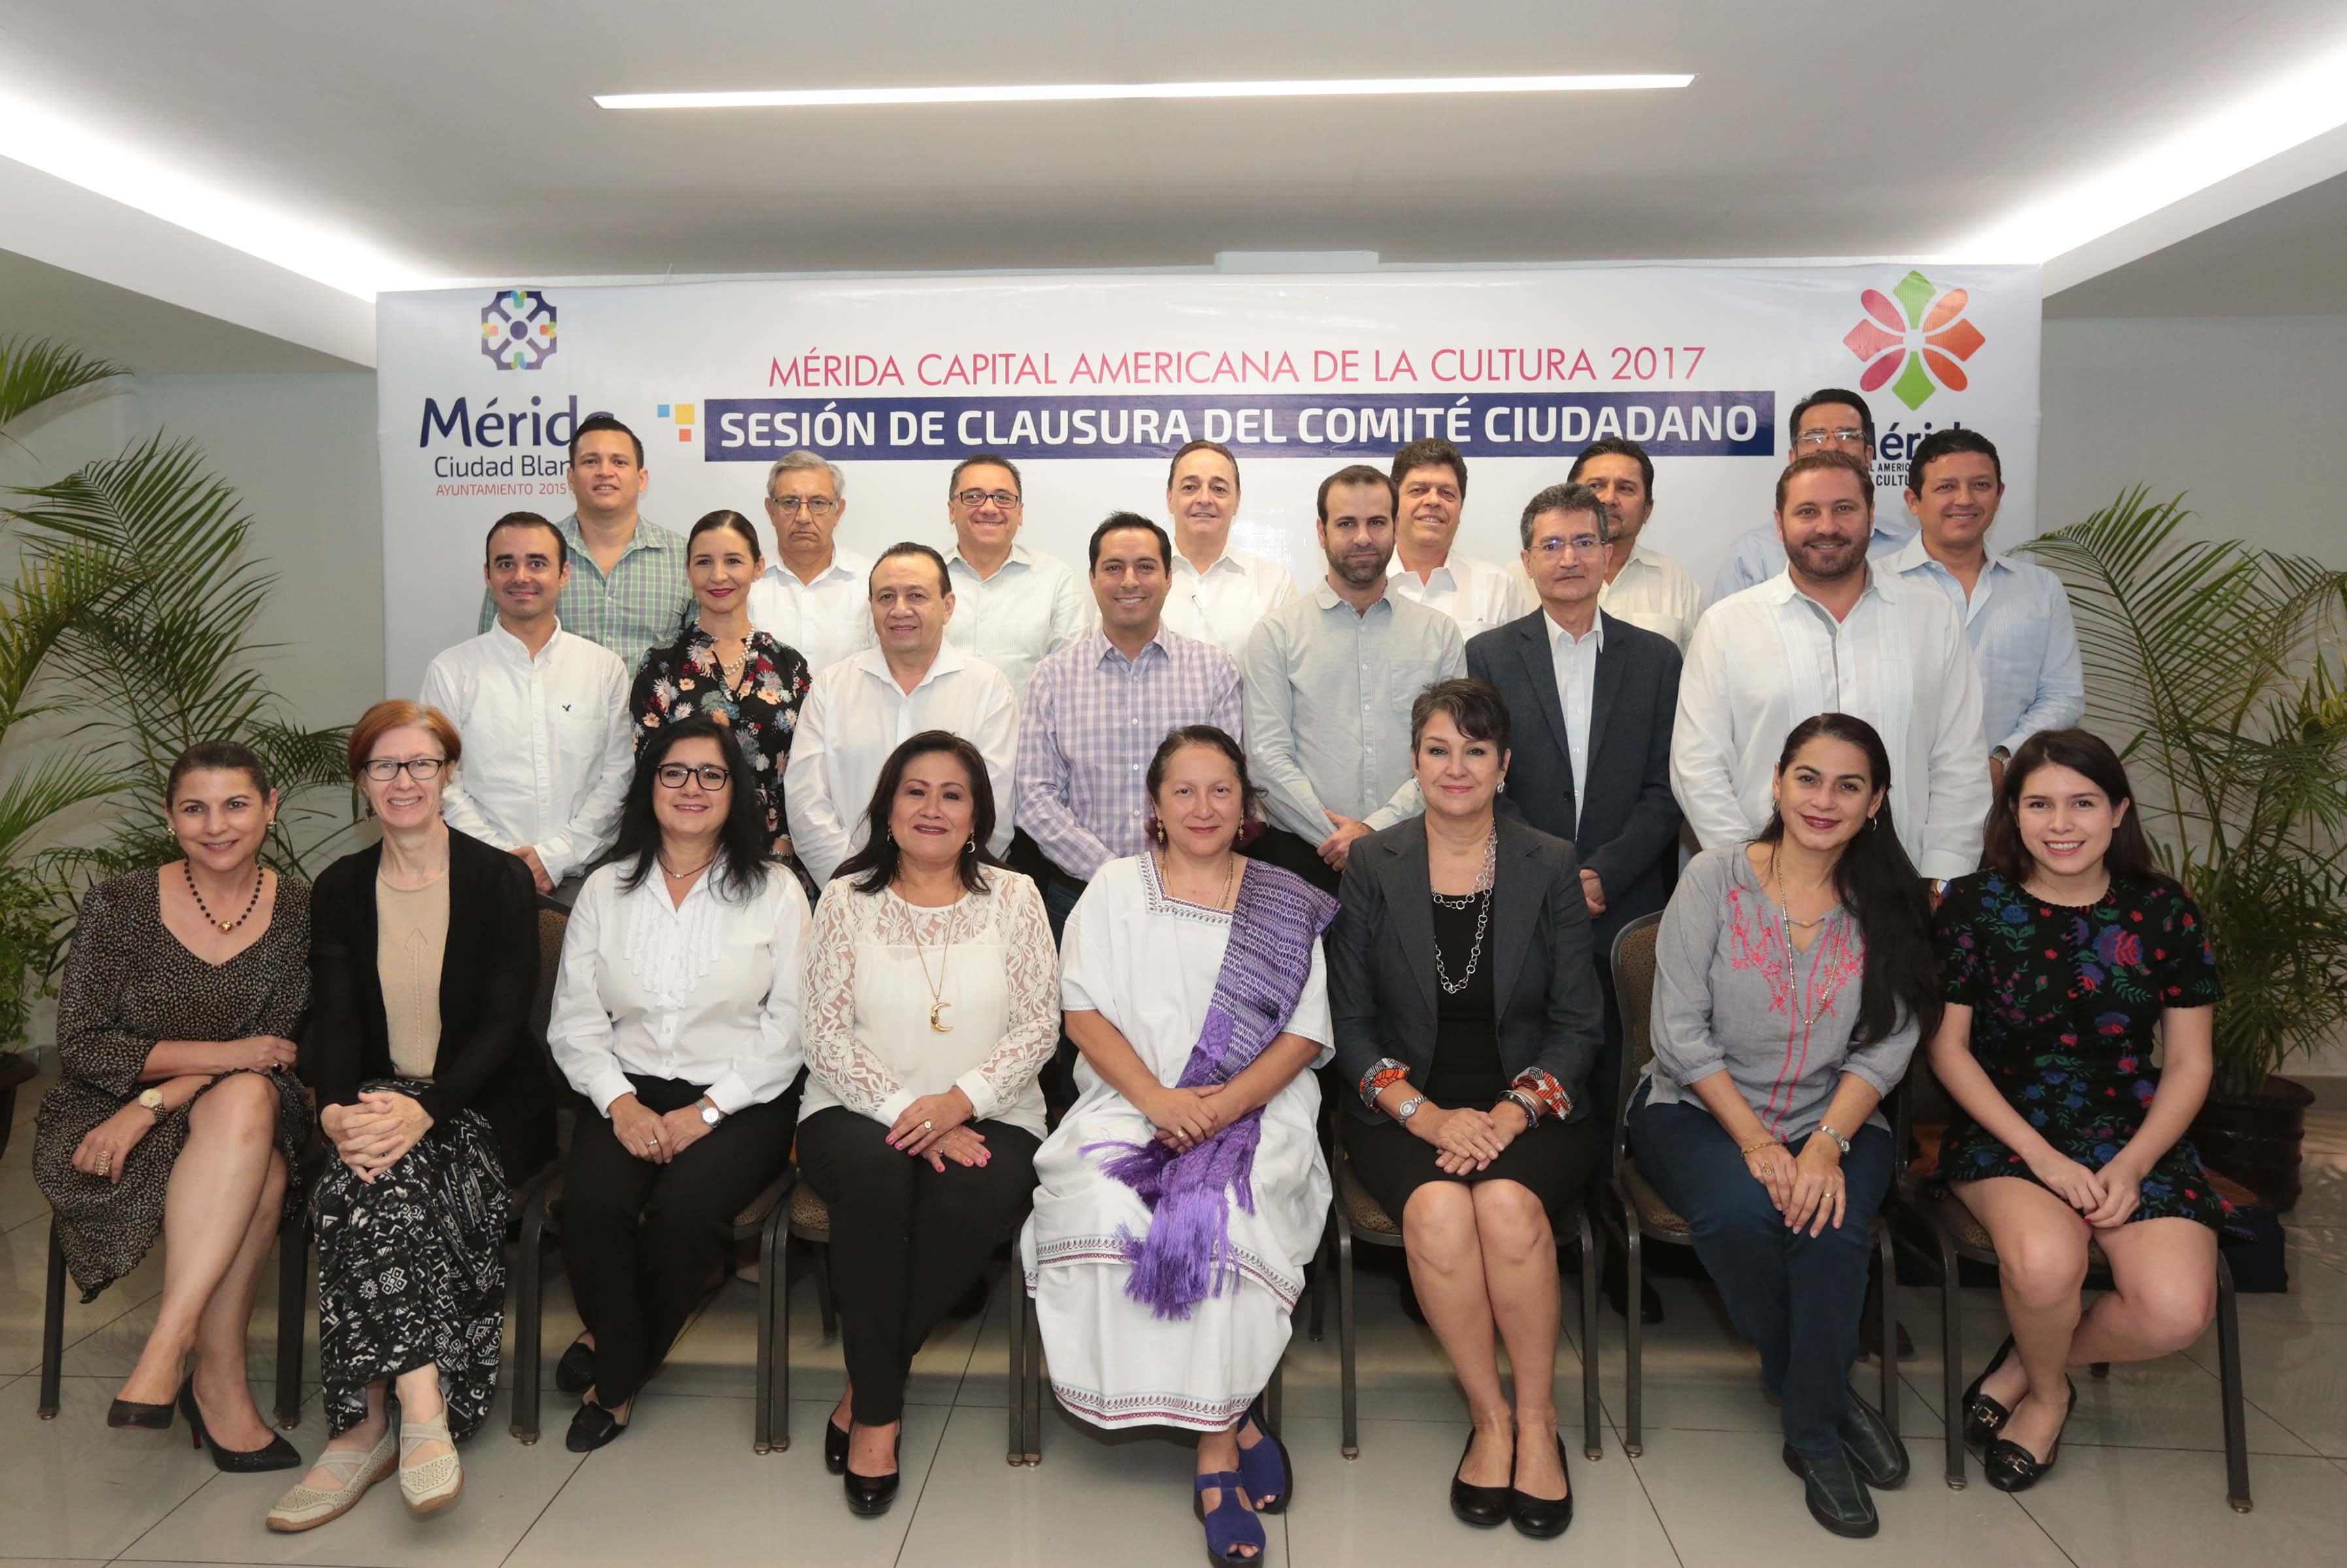 Evalúan resultados de “Mérida, Capital Americana de la Cultura 2017”